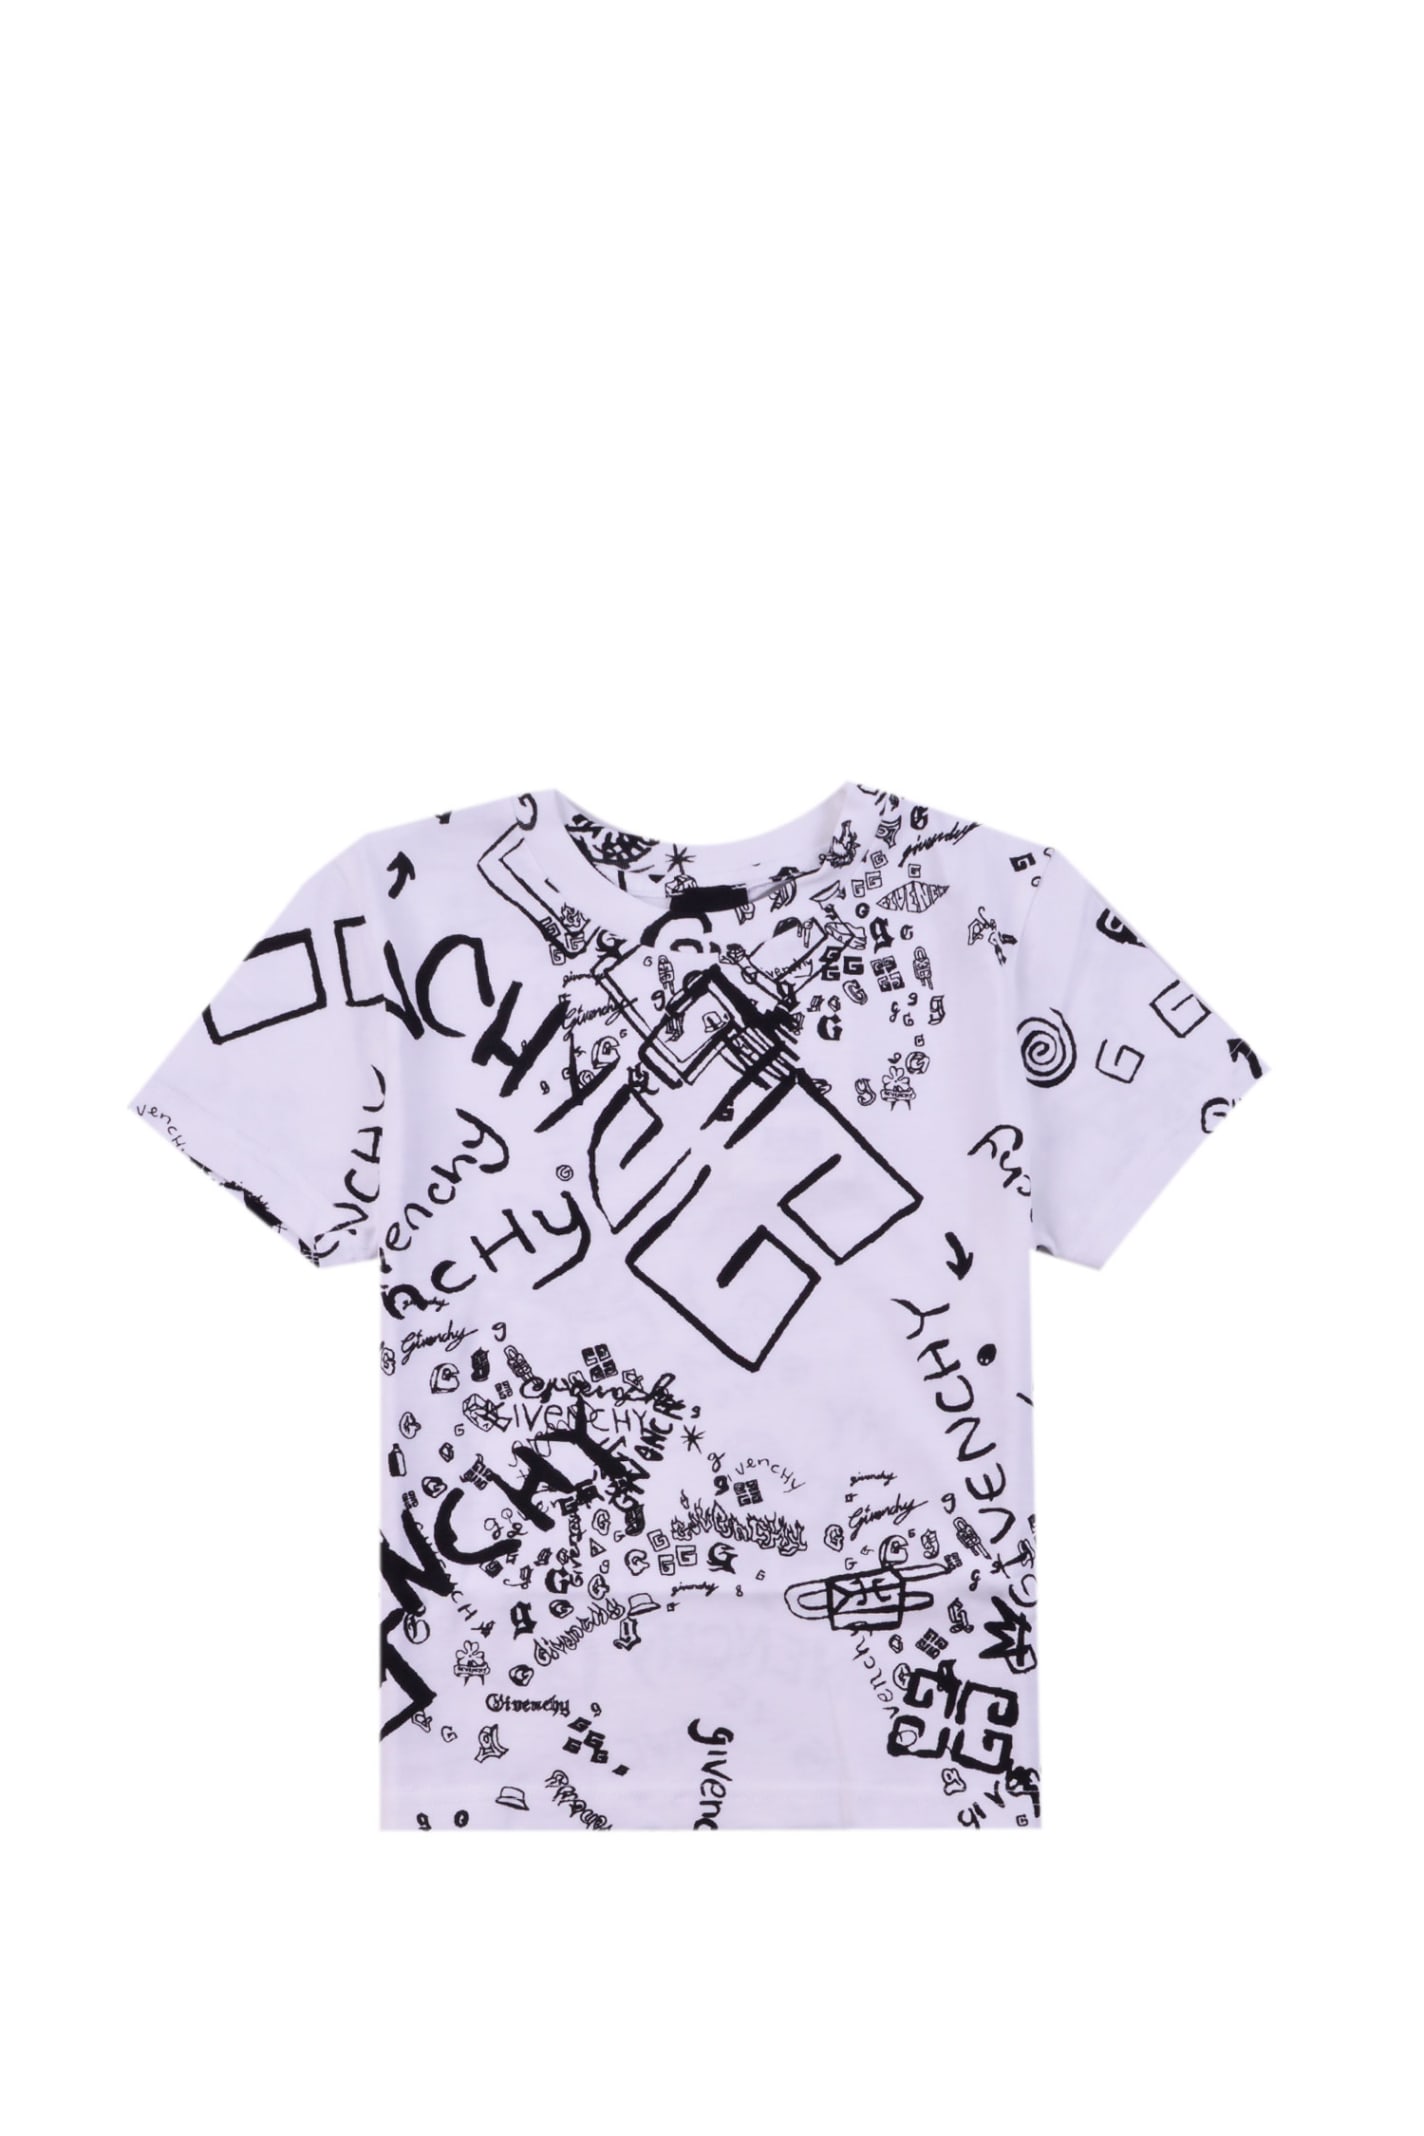 Givenchy Kids' 193 / 5.000 Risultati Della Traduzione Cotton T-shirt With Print In White